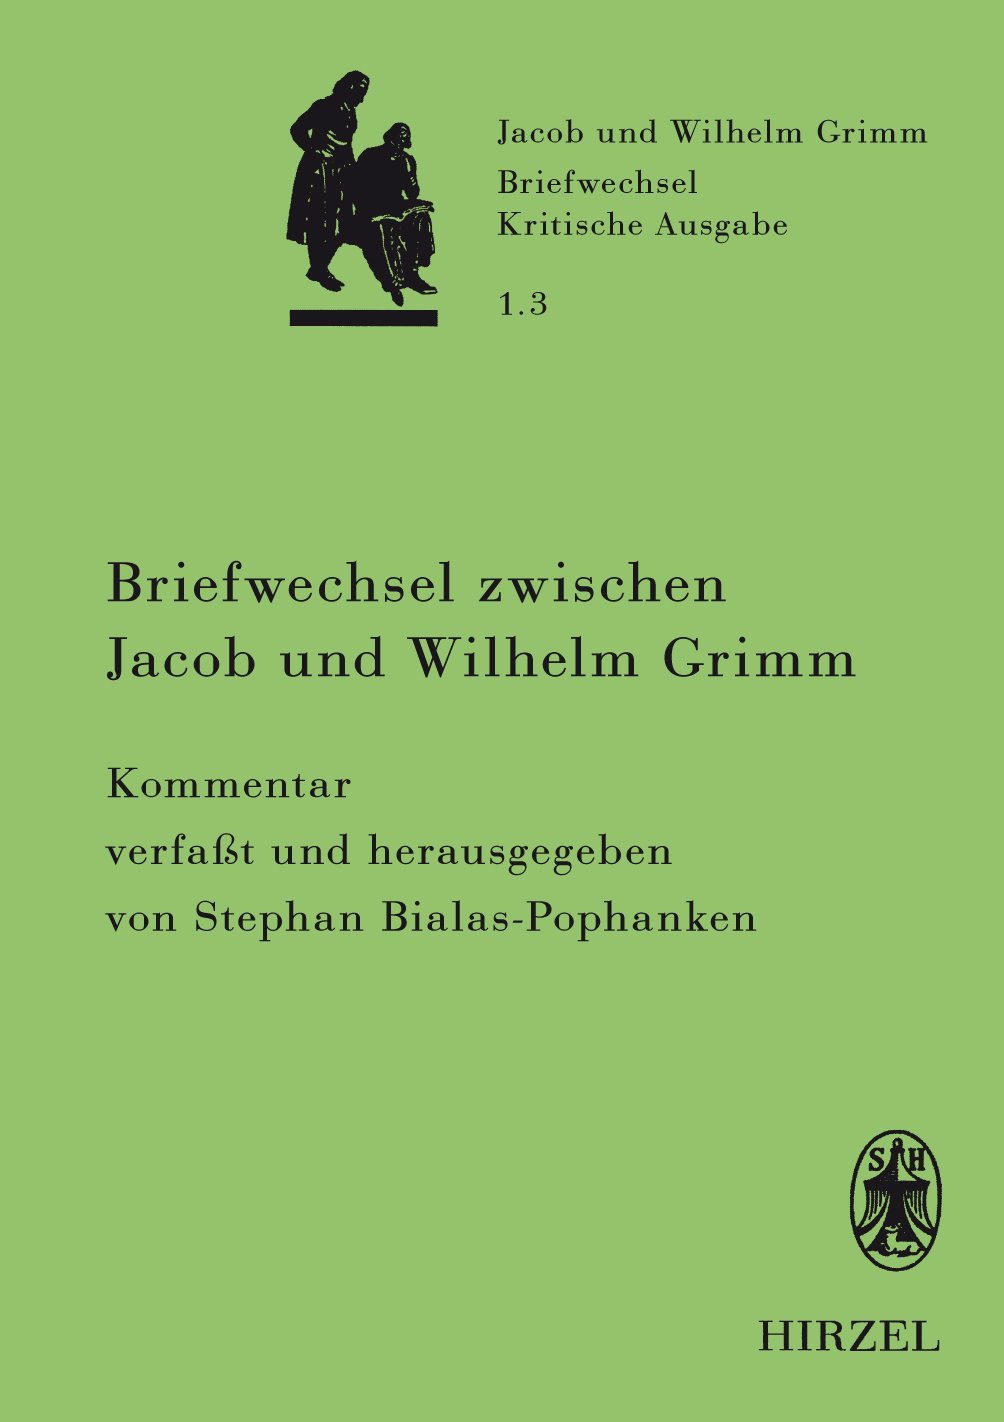 Briefwechsel zwischen Jacob und Wilhelm Grimm. Band 1.3: Kommentar